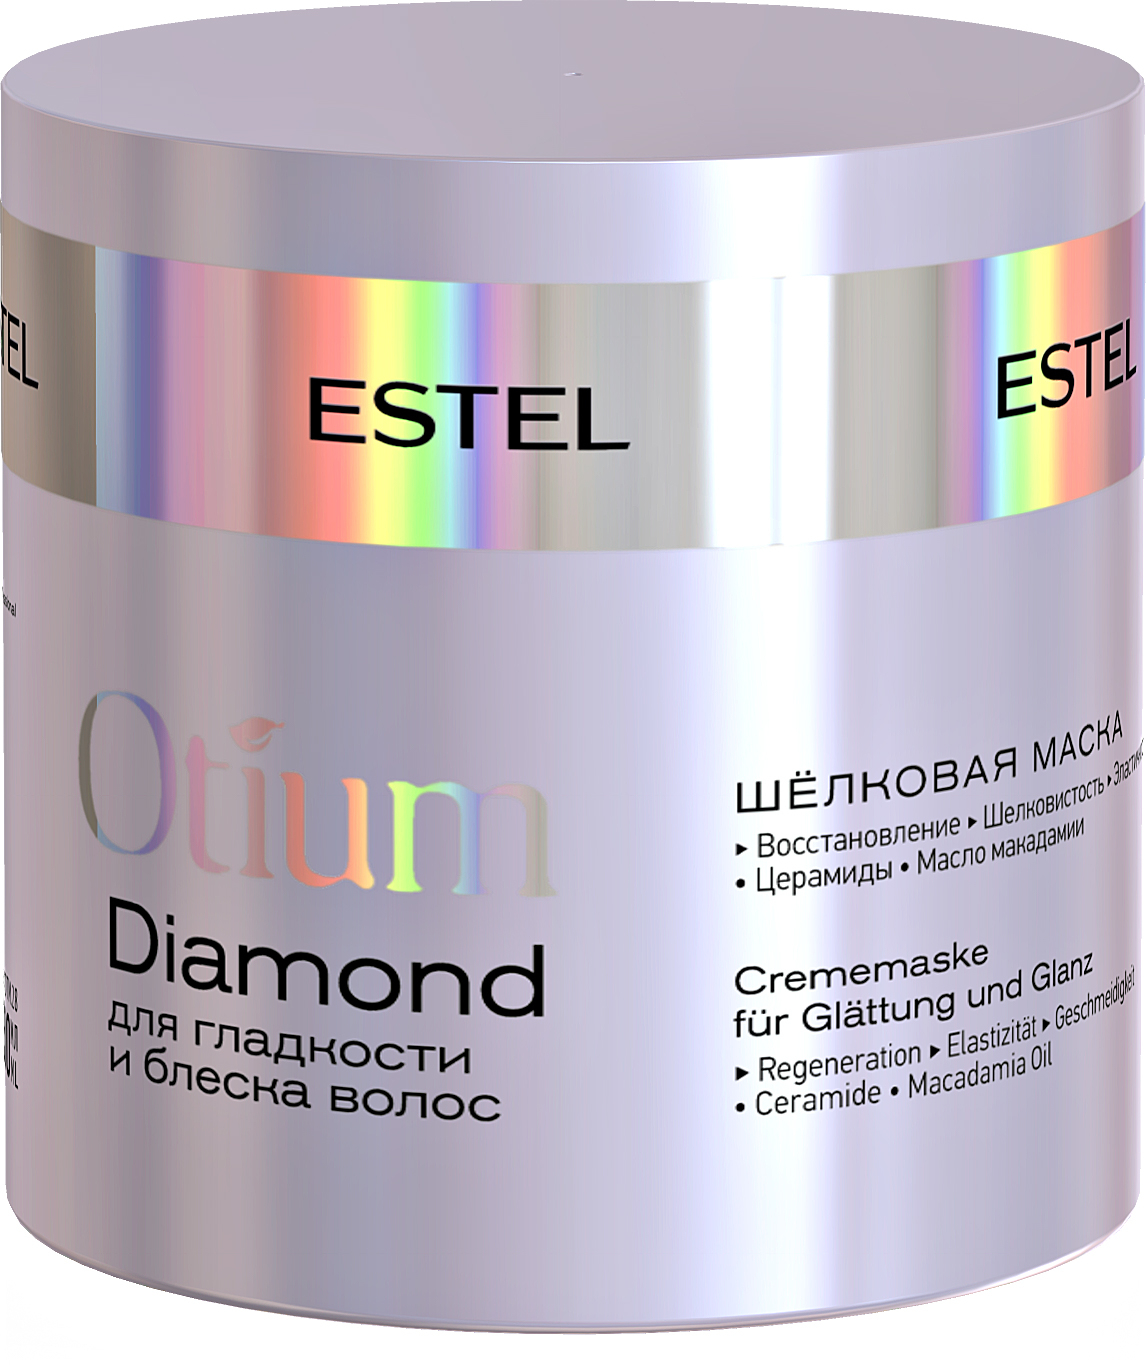 Otium маска для волос. Шёлковая маска для гладкости и блеска волос Otium Diamond, 300. Estel Otium Diamond маска. Маска отиум для гладкости. Маска для волос Эстель Otium.